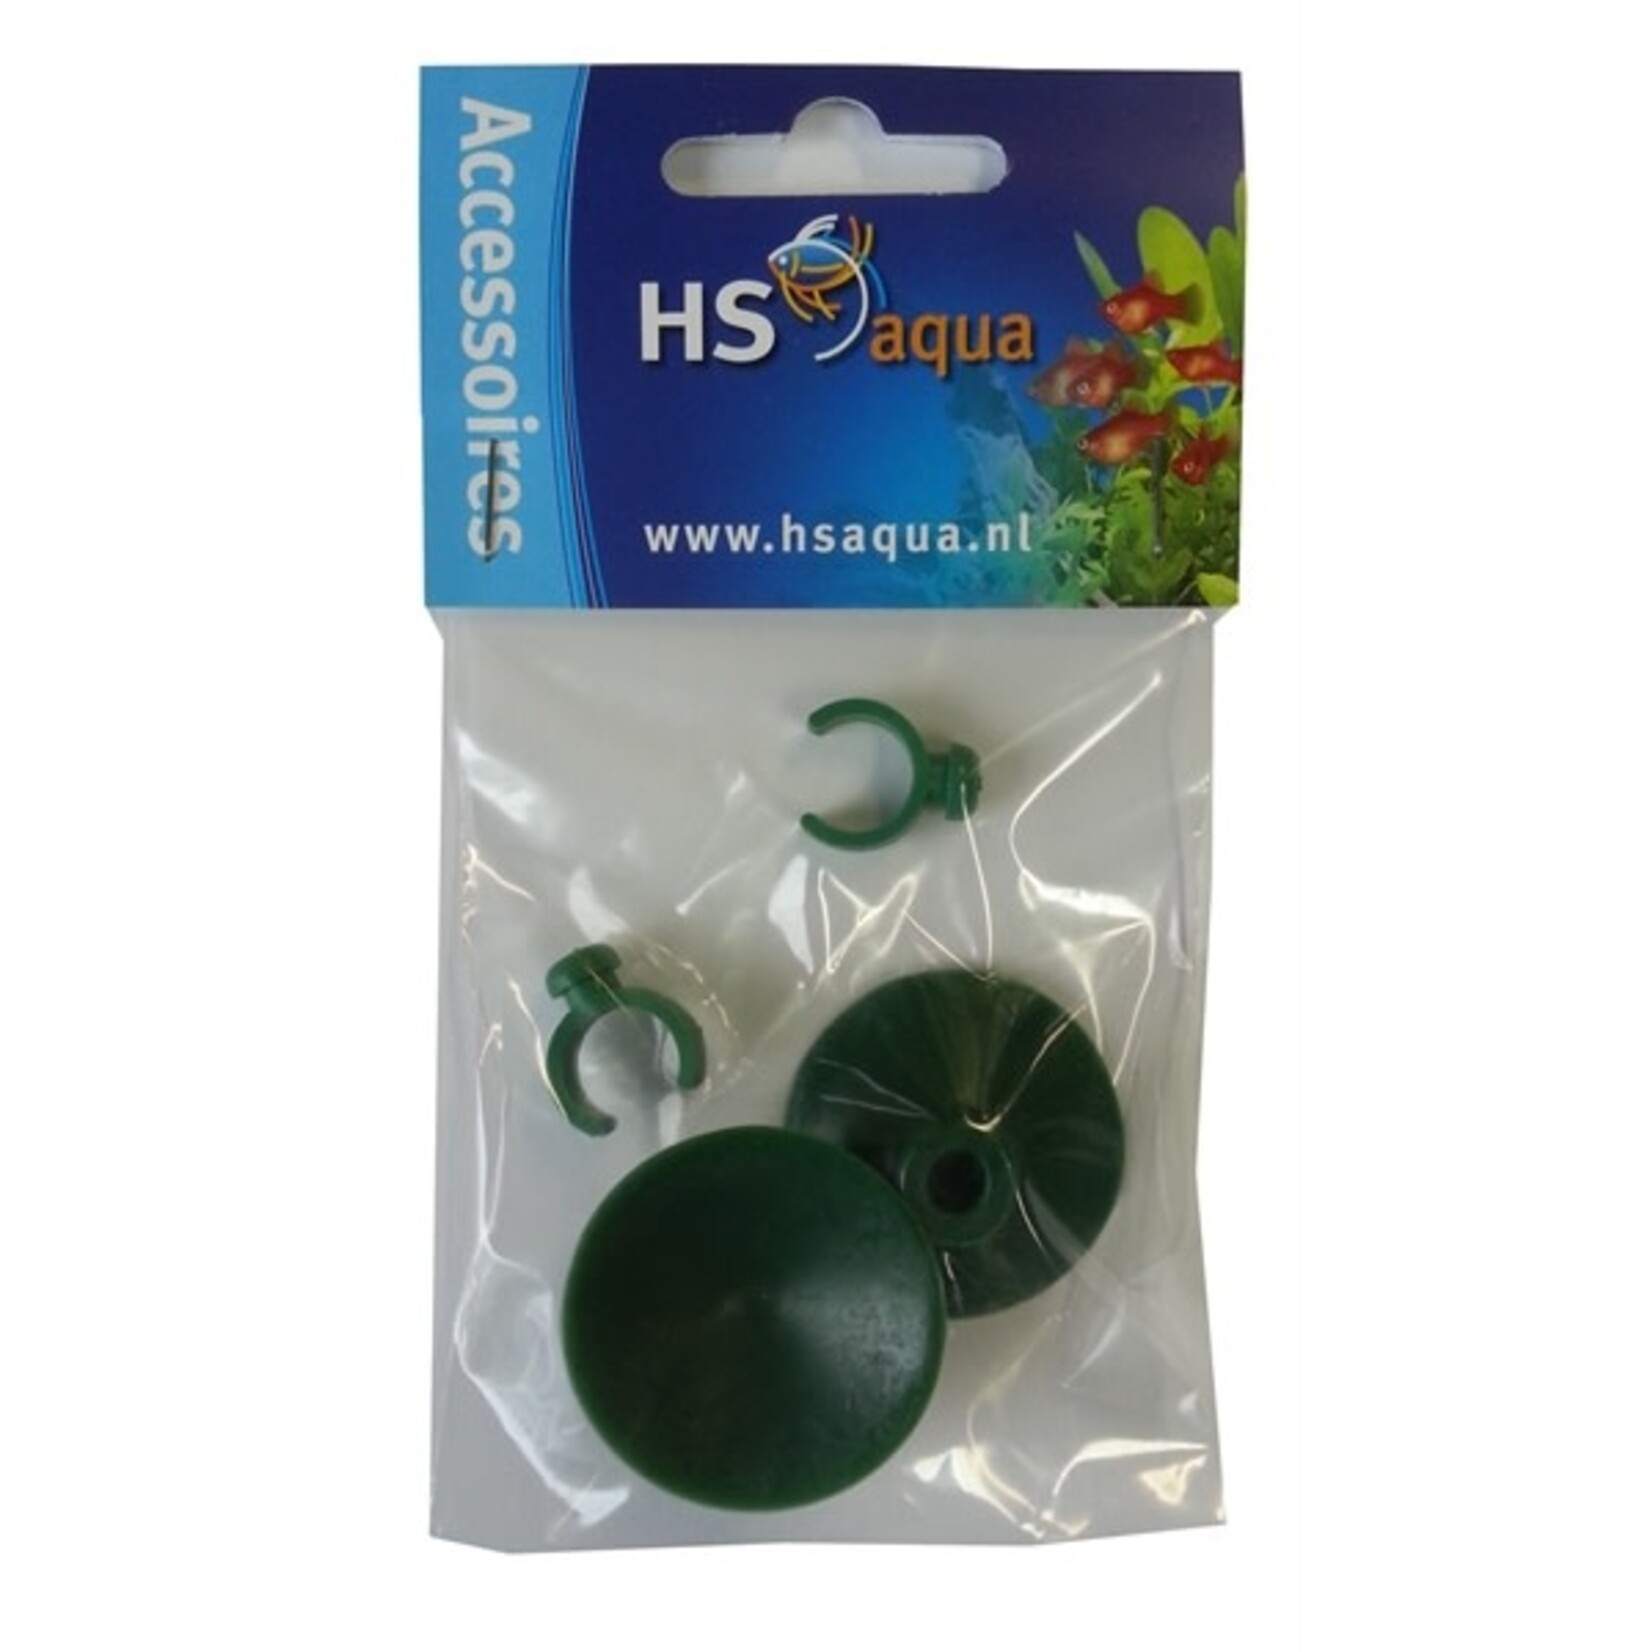 HS Aqua Clipzuiger groen 12-16 per 2st.